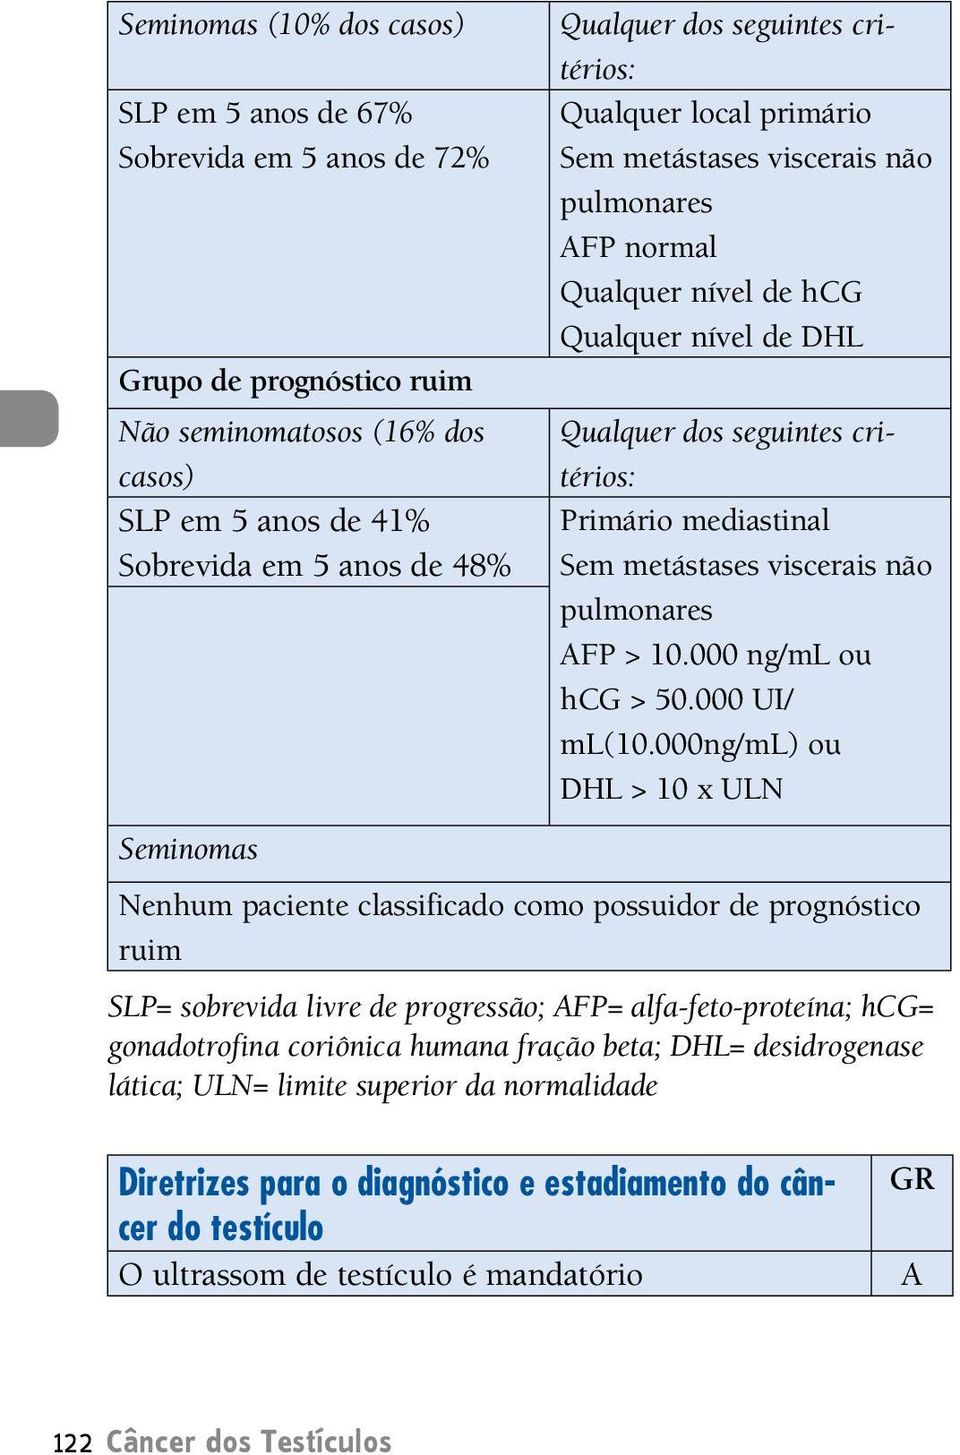 metástases viscerais não pulmonares FP > 10.000 ng/ml ou hcg > 50.000 UI/ ml(10.